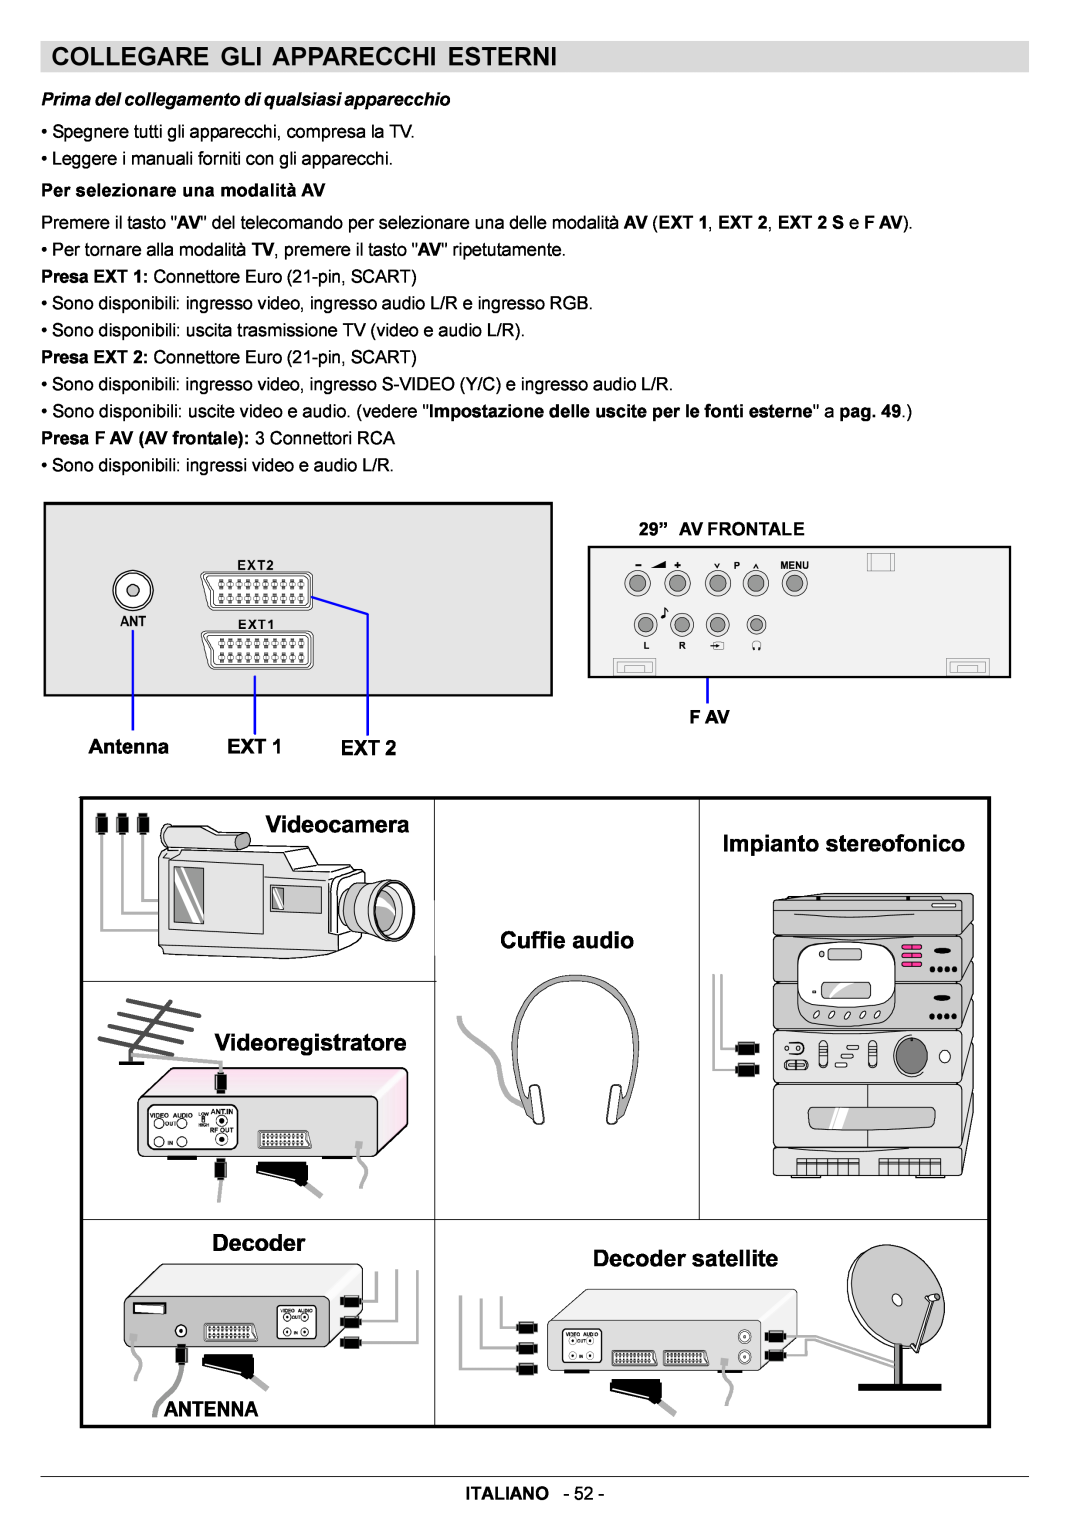 JVC AV29BF10EPS manual Collegare Gli Apparecchi Esterni, Prima del collegamento di qualsiasi apparecchio 